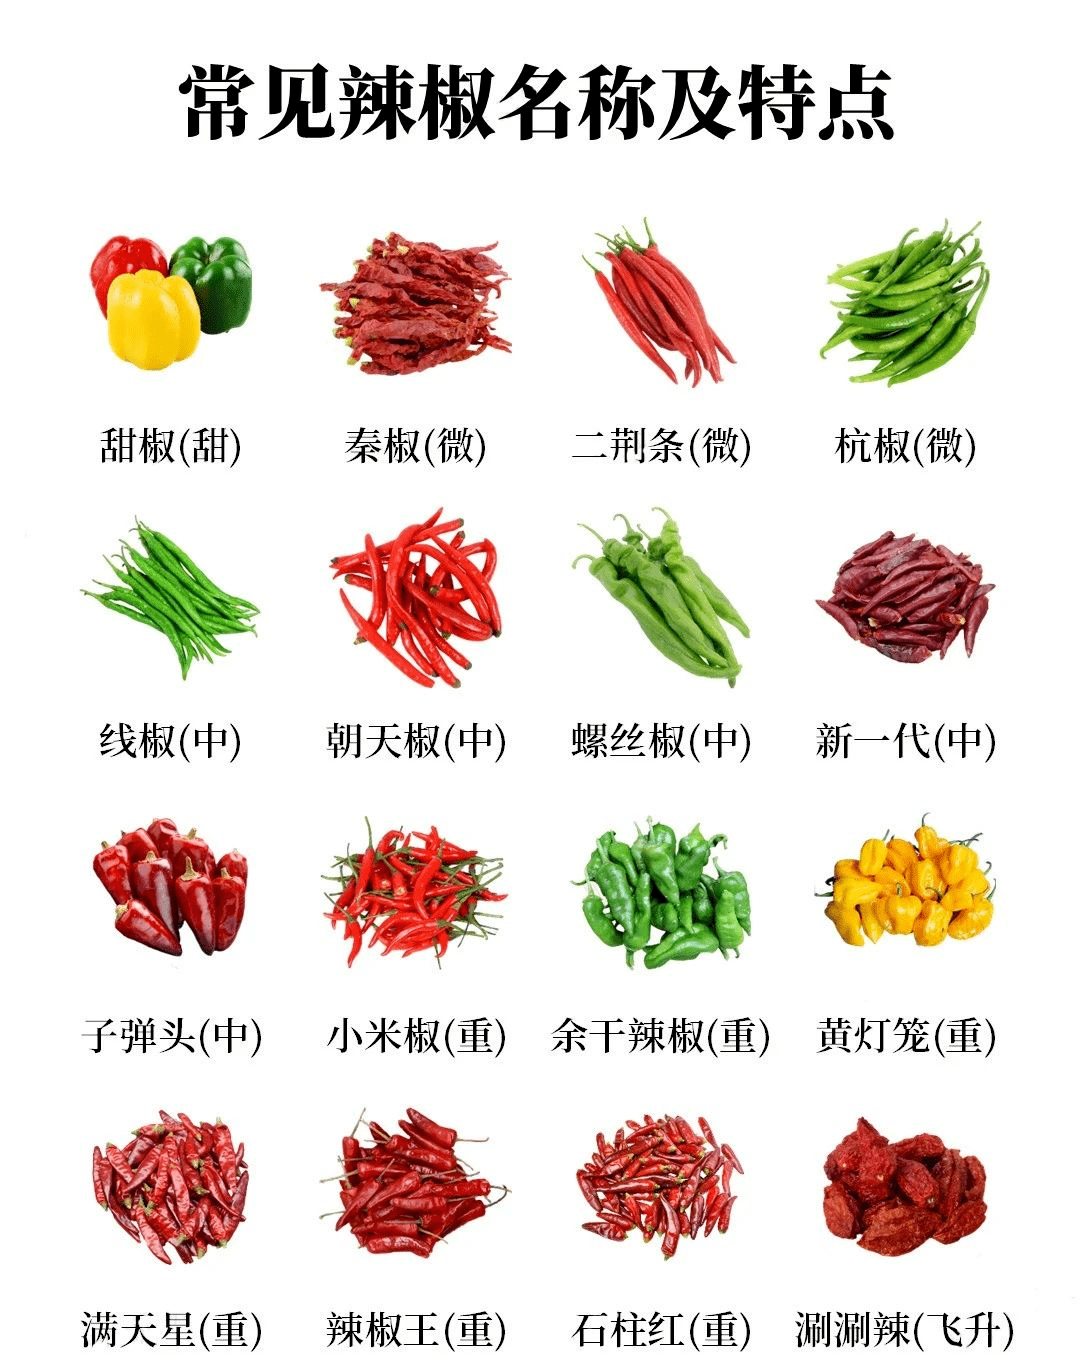 世界上有哪些常见的辣椒品种?